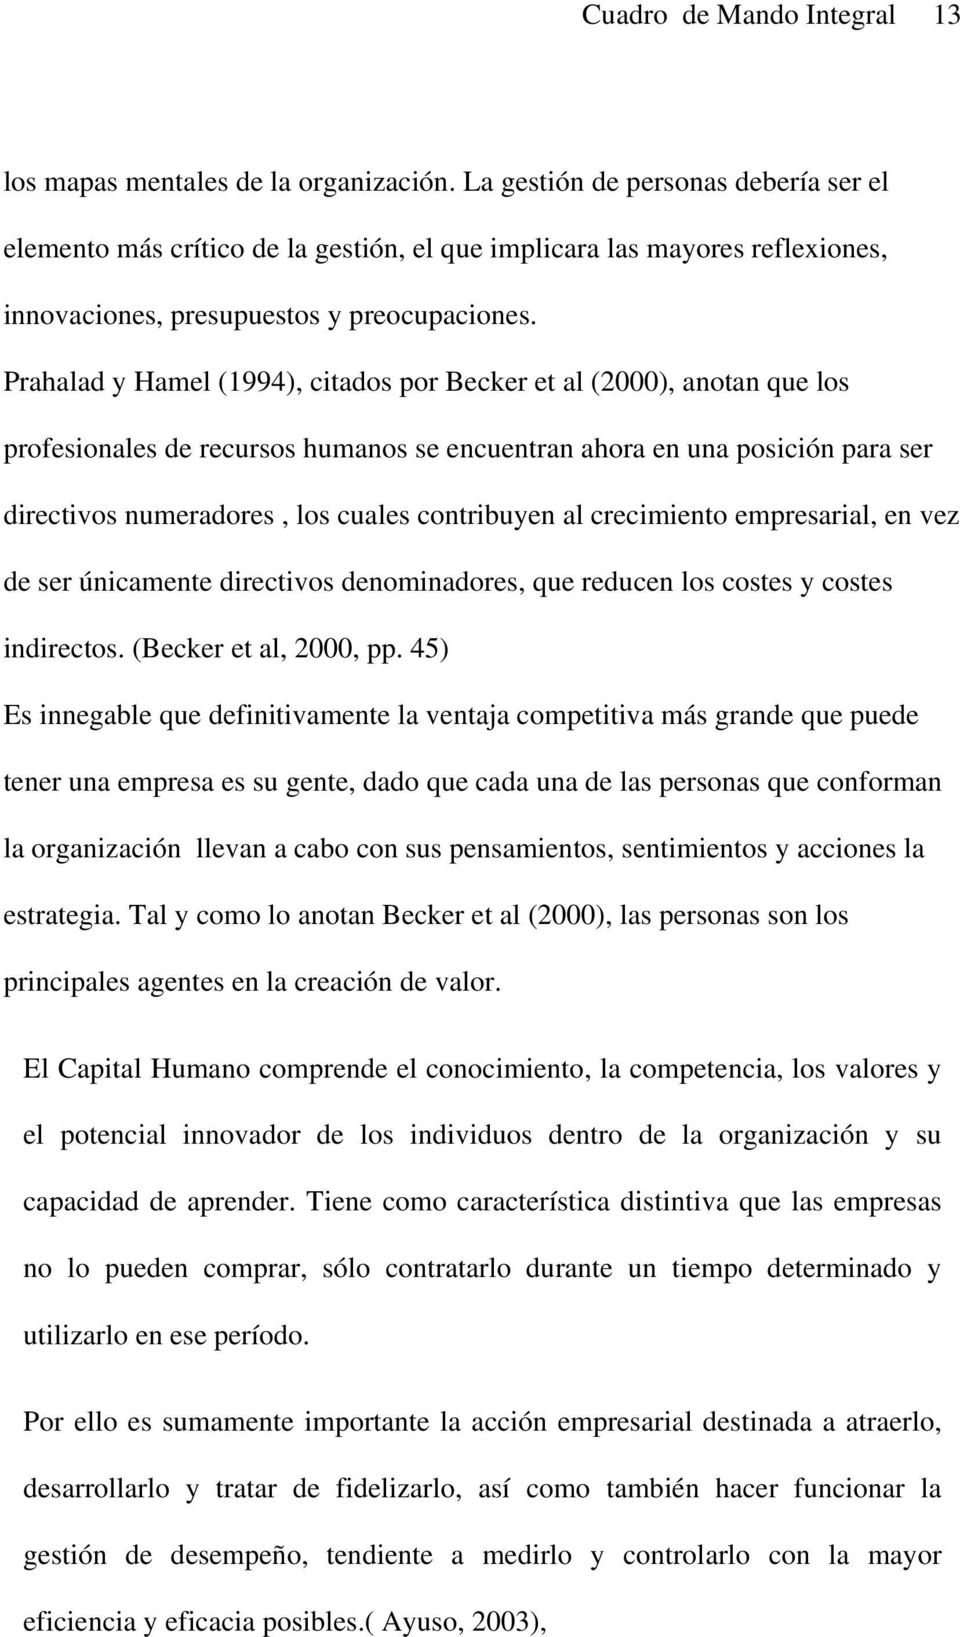 Prahalad y Hamel (1994), citados por Becker et al (2000), anotan que los profesionales de recursos humanos se encuentran ahora en una posición para ser directivos numeradores, los cuales contribuyen